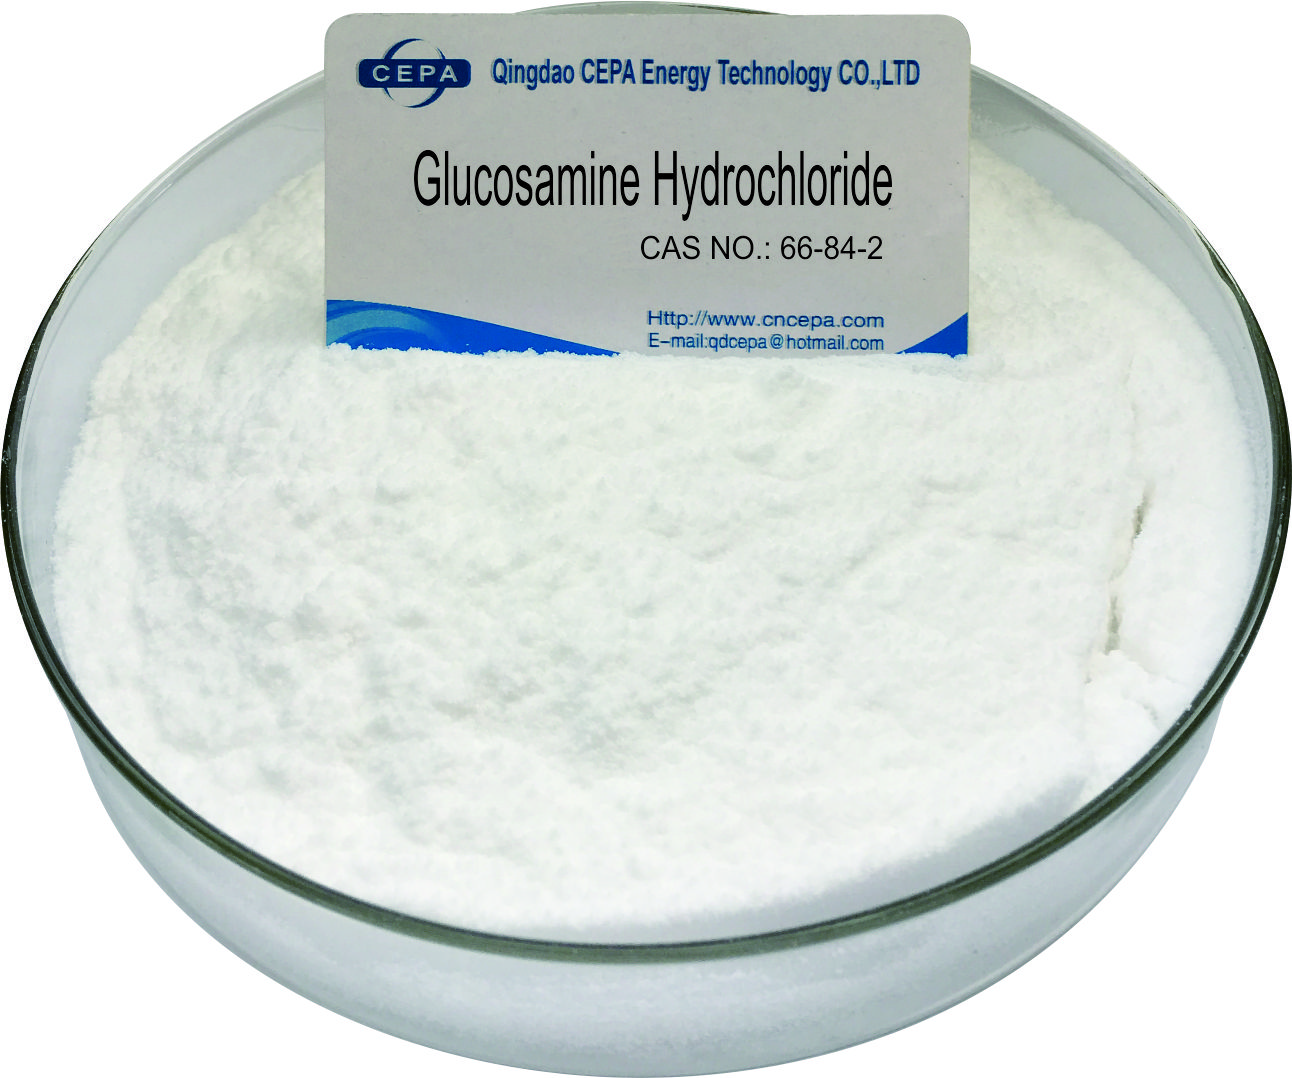 Drug additive Glucosamine Hydrochloride